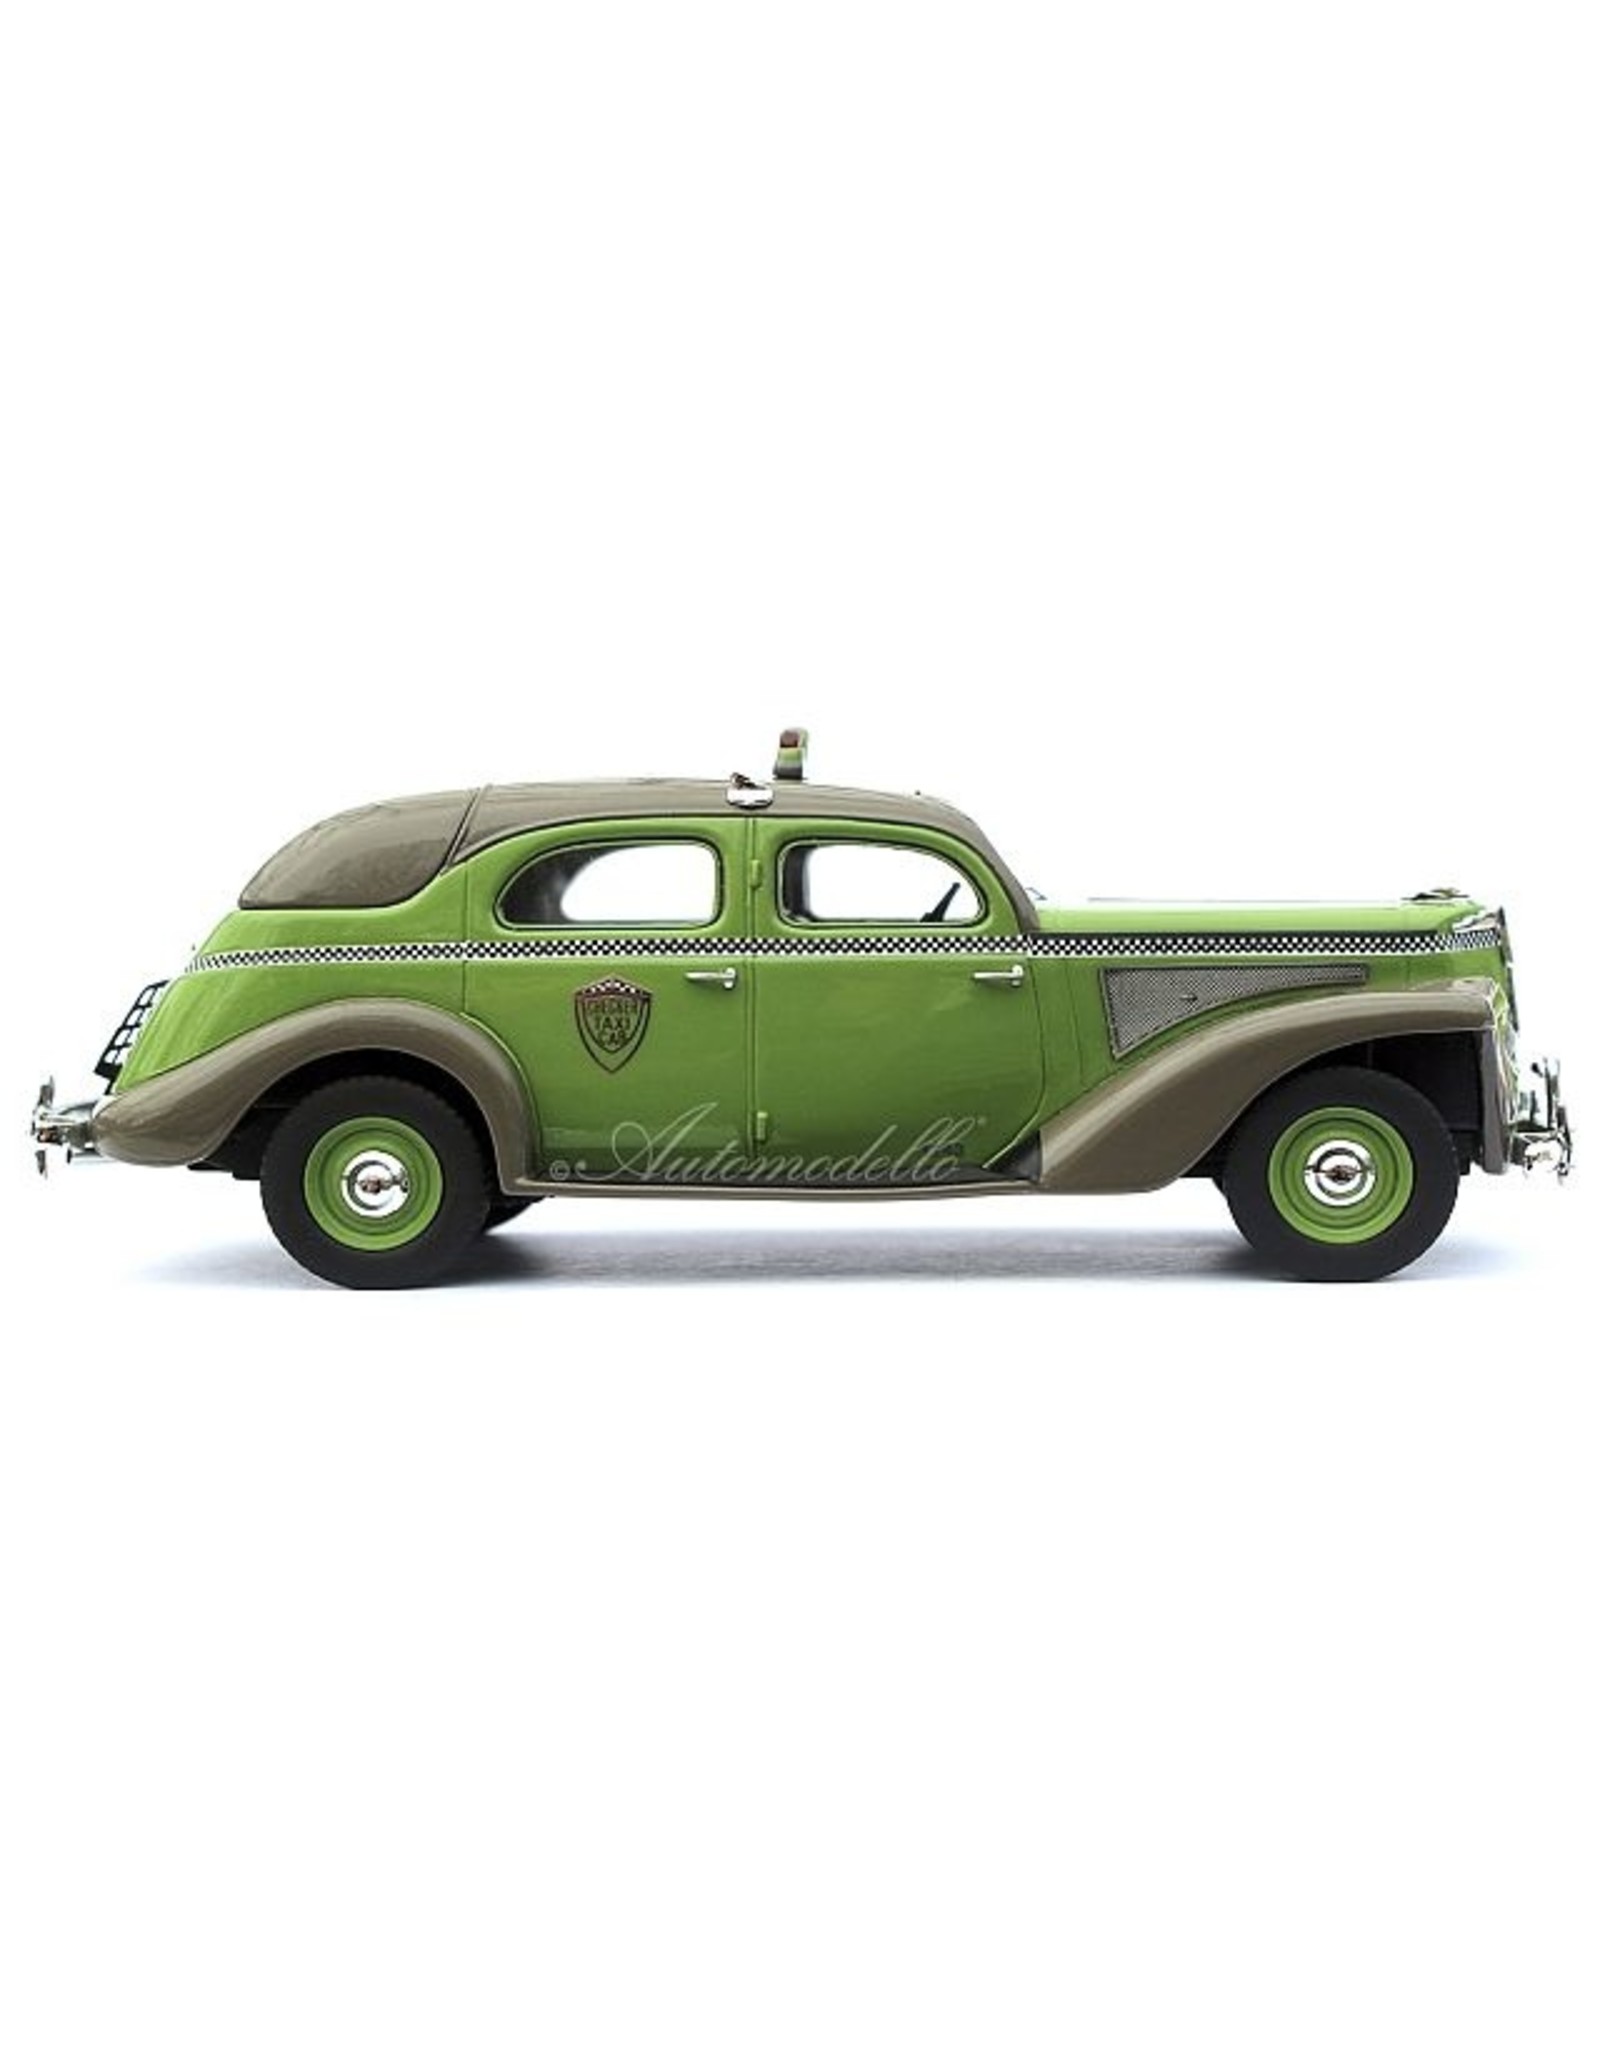 CHECKER Checker Model A(1940-41)green for Chicago Kalamazoo